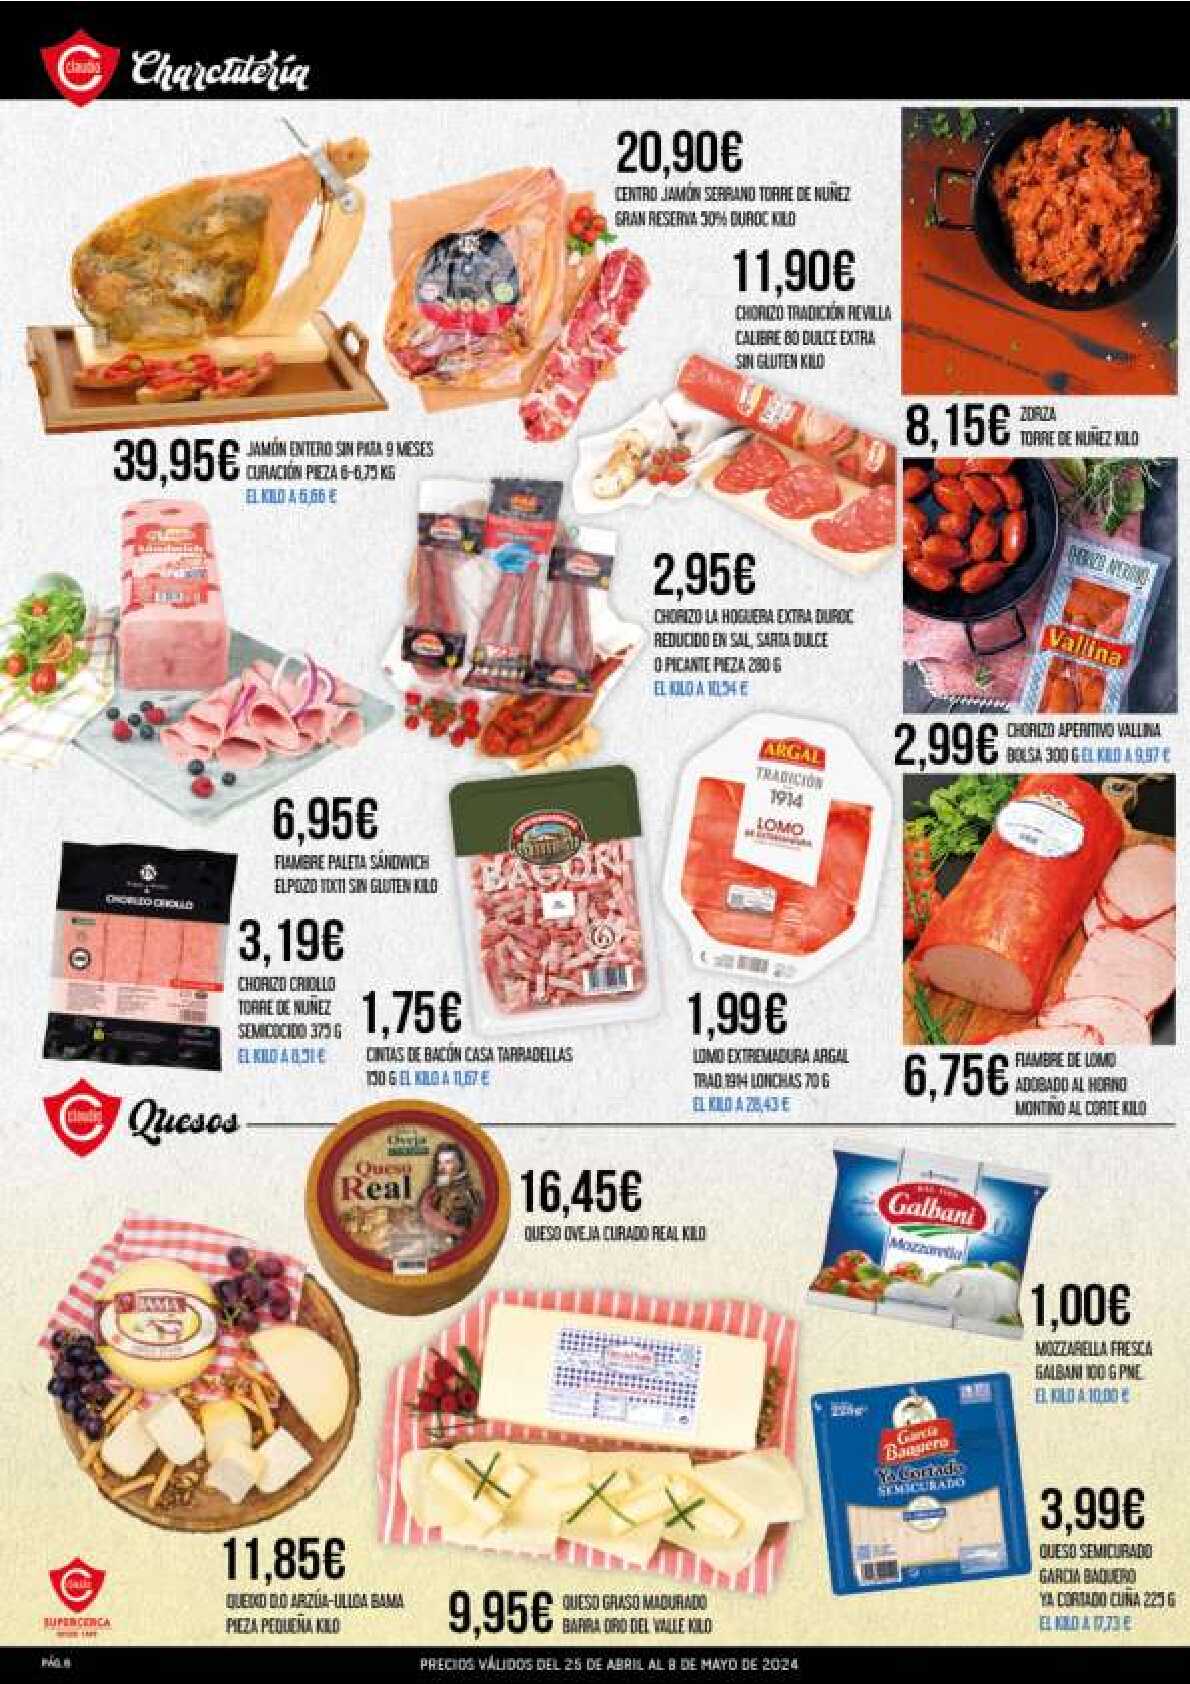 Ofertas quincenales Supermercado Claudio. Página 06